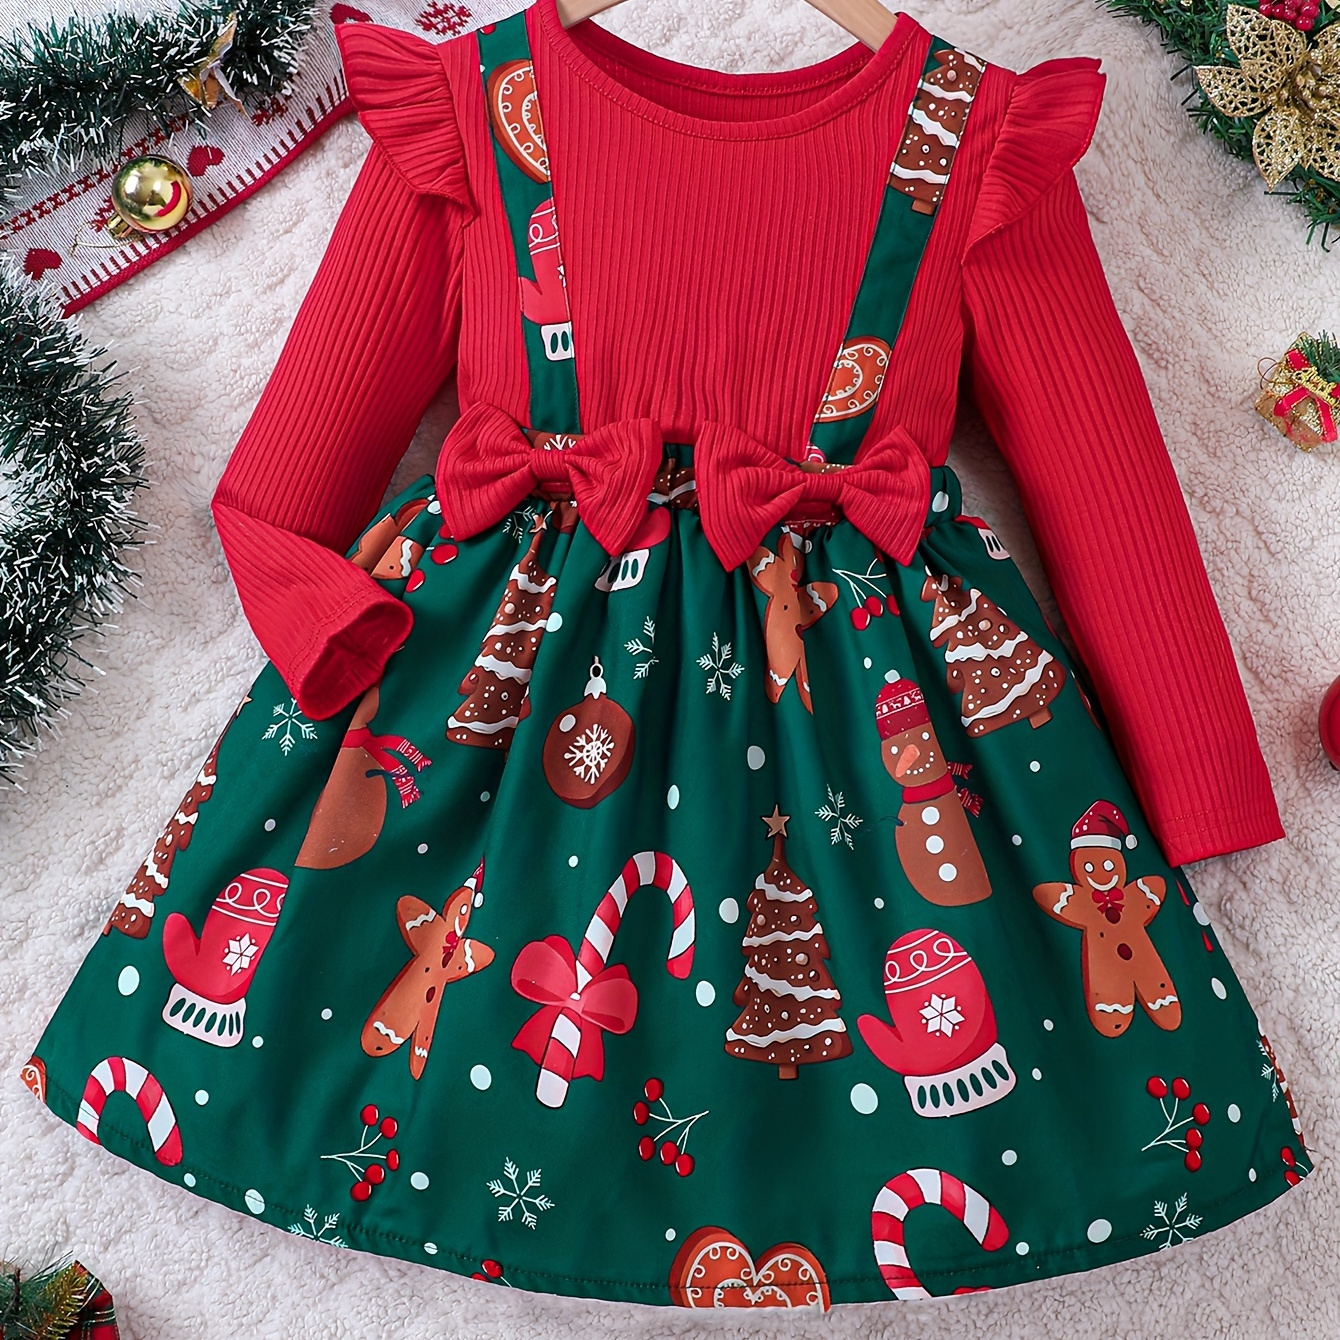 

Girls Splicing Gingerbread Man Graphic Flutter Trim Long Sleeve Dress Fall Winter Christmas Gift